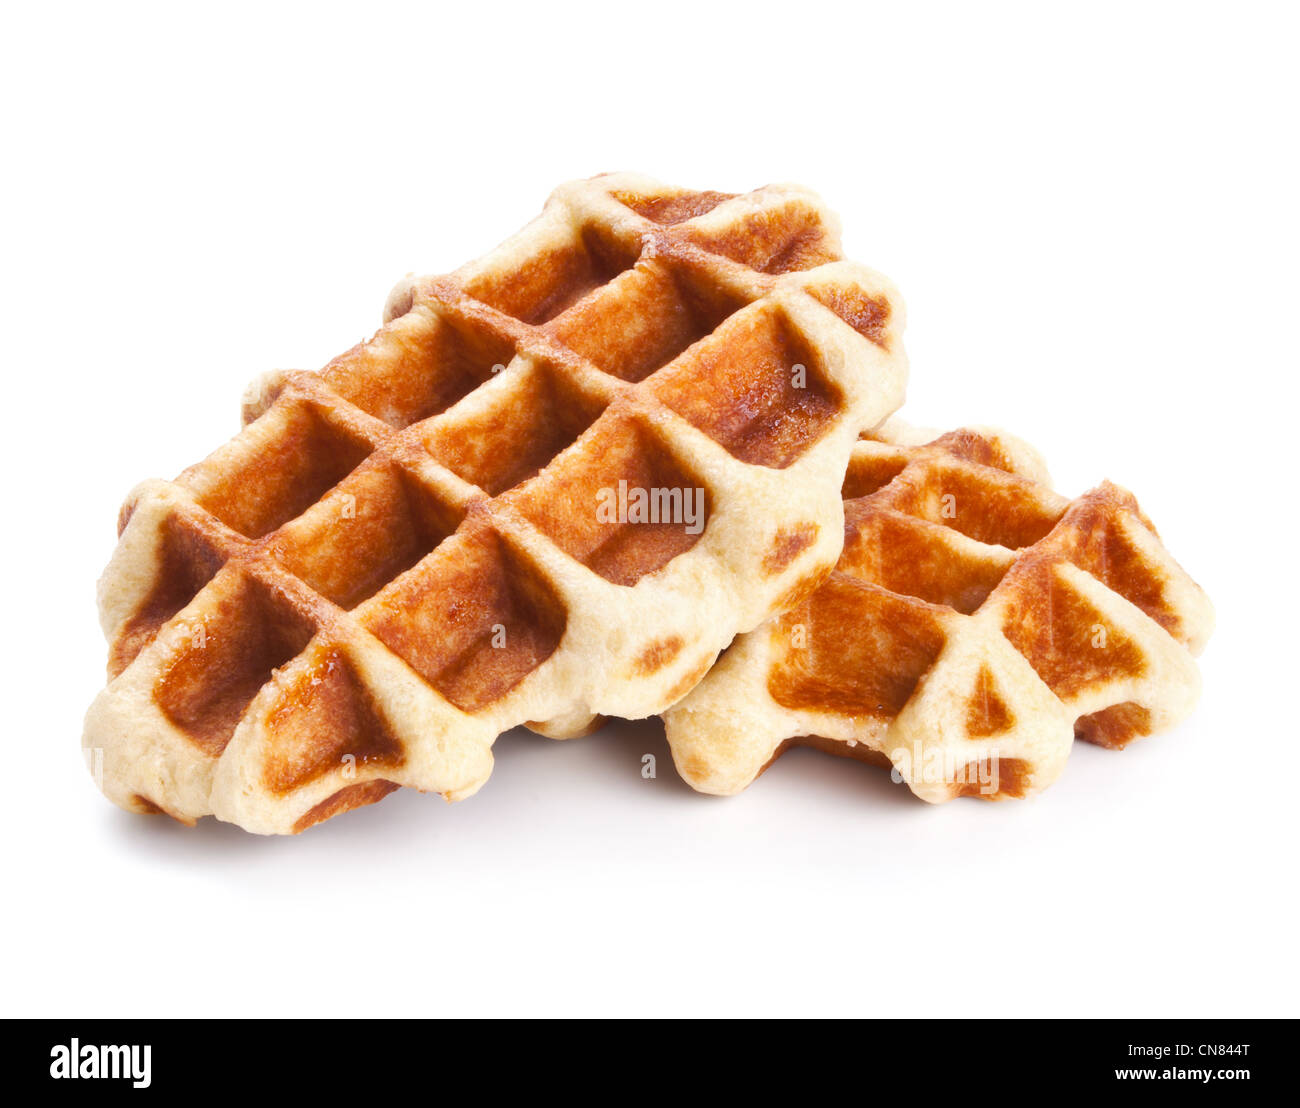 Sweet Belgium waffles isolated on white Stock Photo